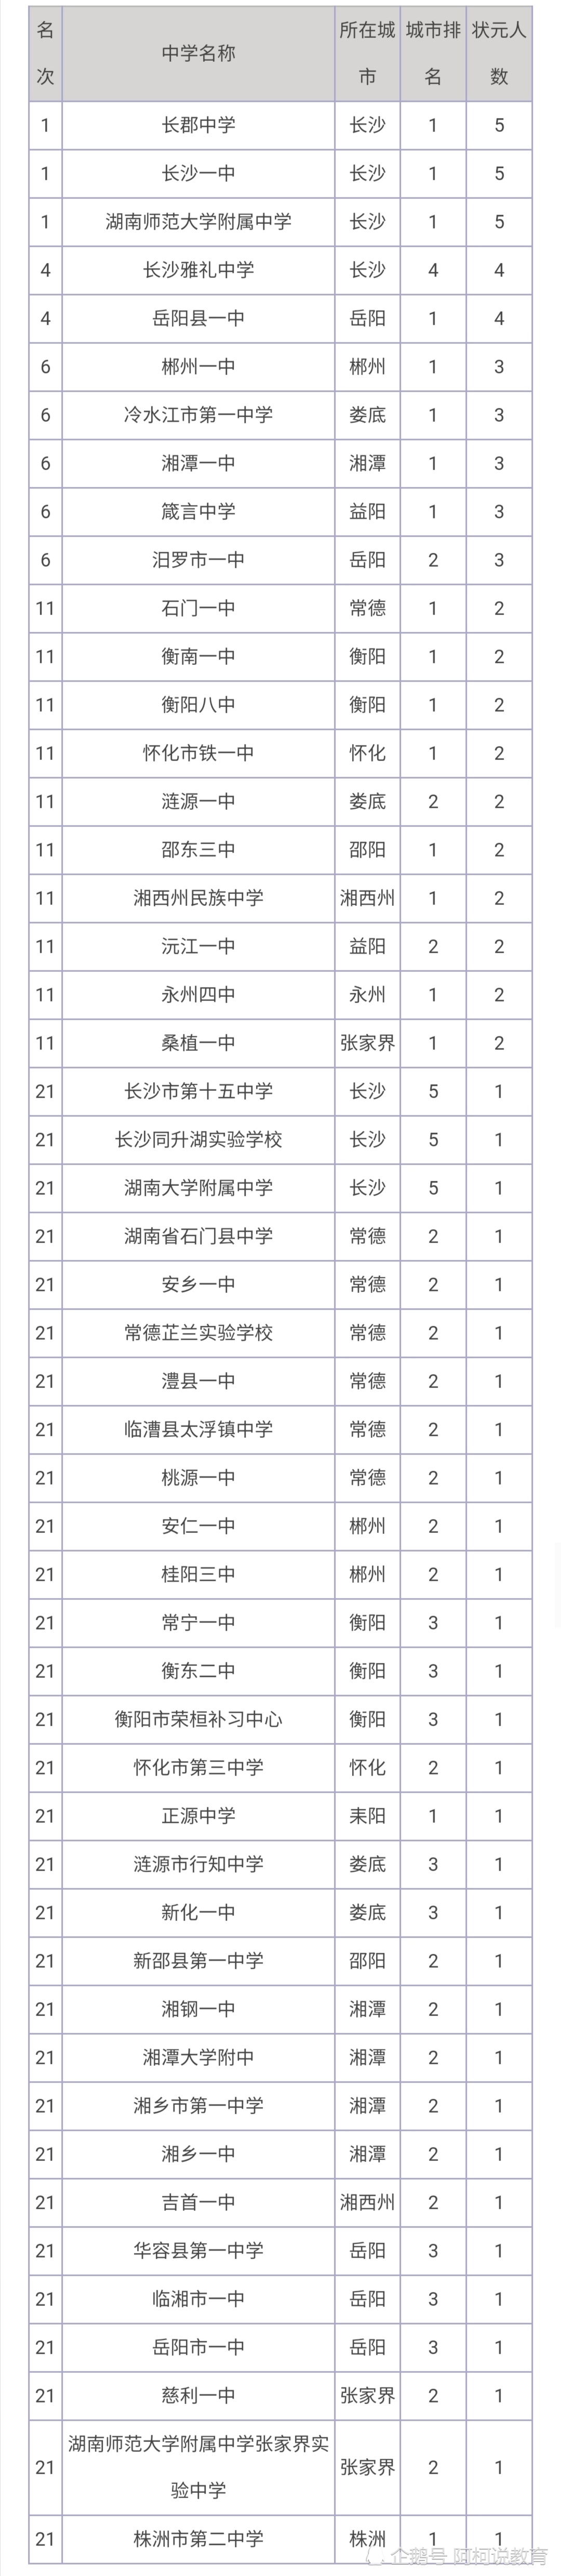 最新湖南省高中排行榜:四大名校依旧强势,一所县级中学亮了!